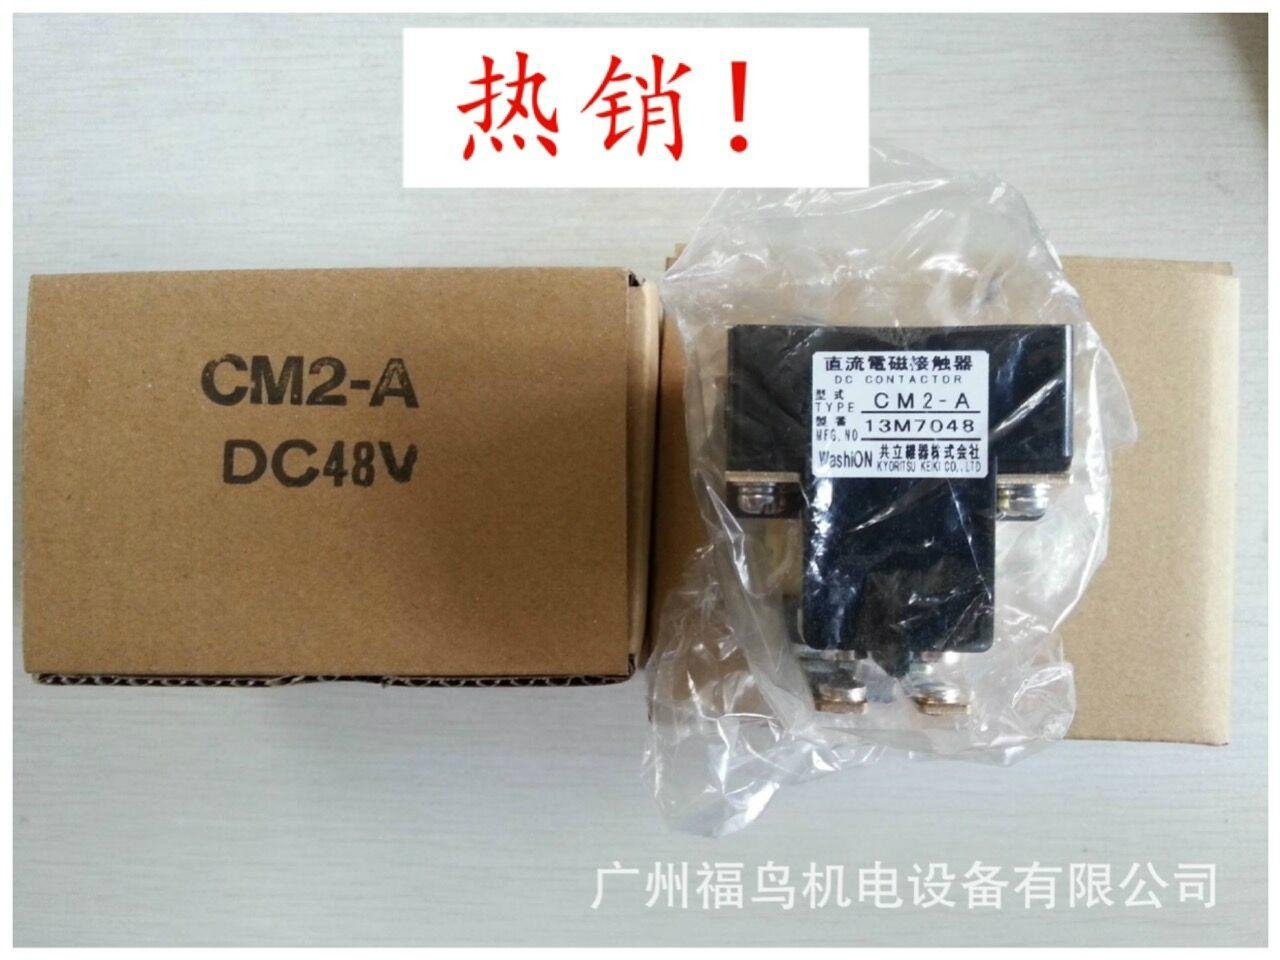 共立继器株式会社 直流电磁接触器, 型号: CM2-A  DC48V